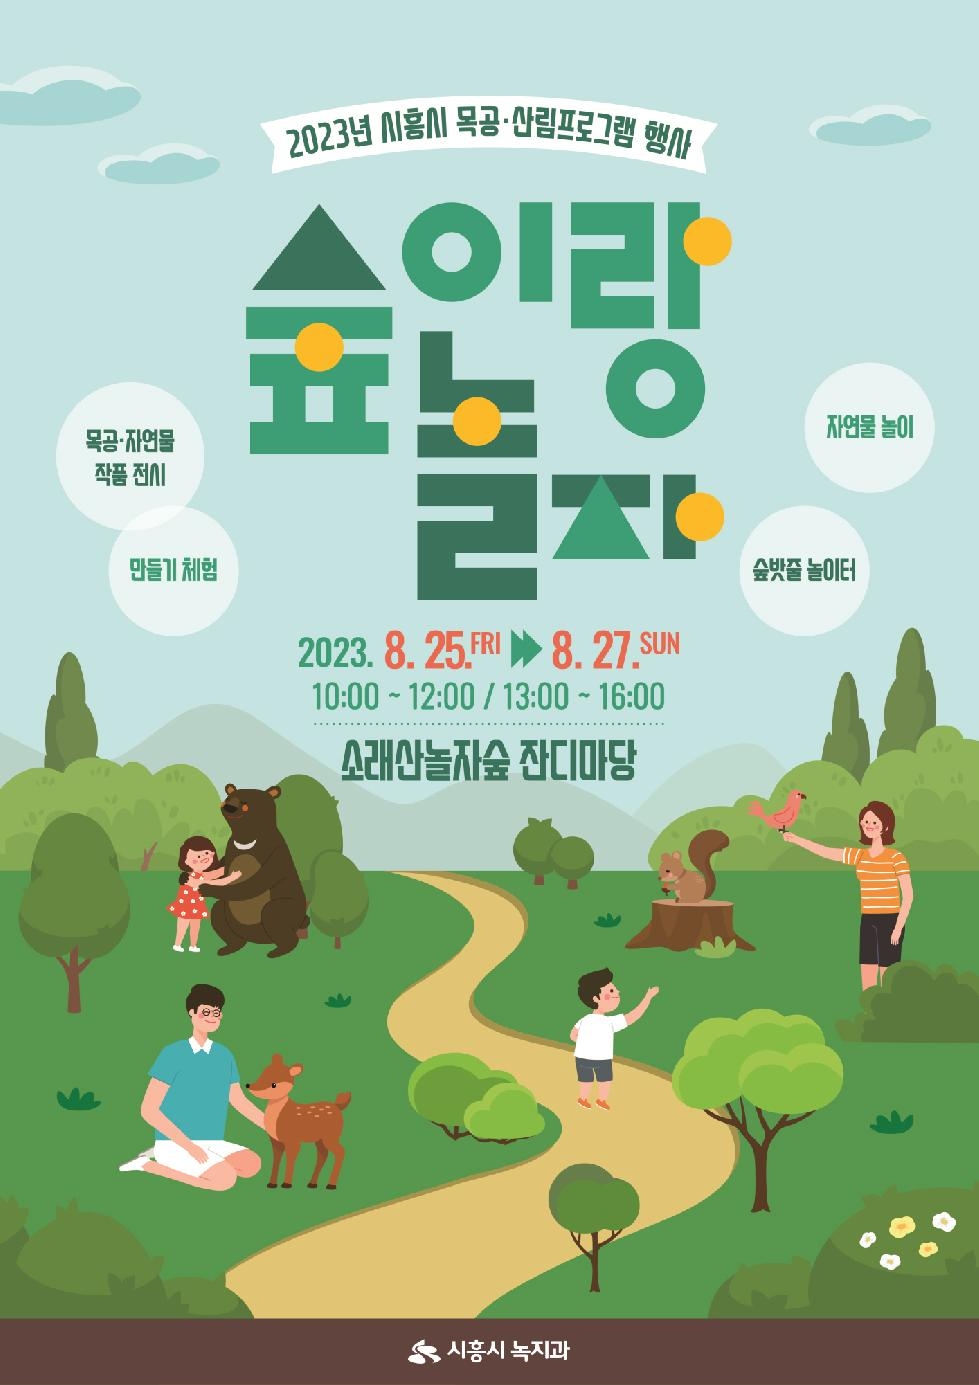 시흥시 목공·숲 체험 행사 가득한 ‘2023 숲에서 놀자!’ 개최